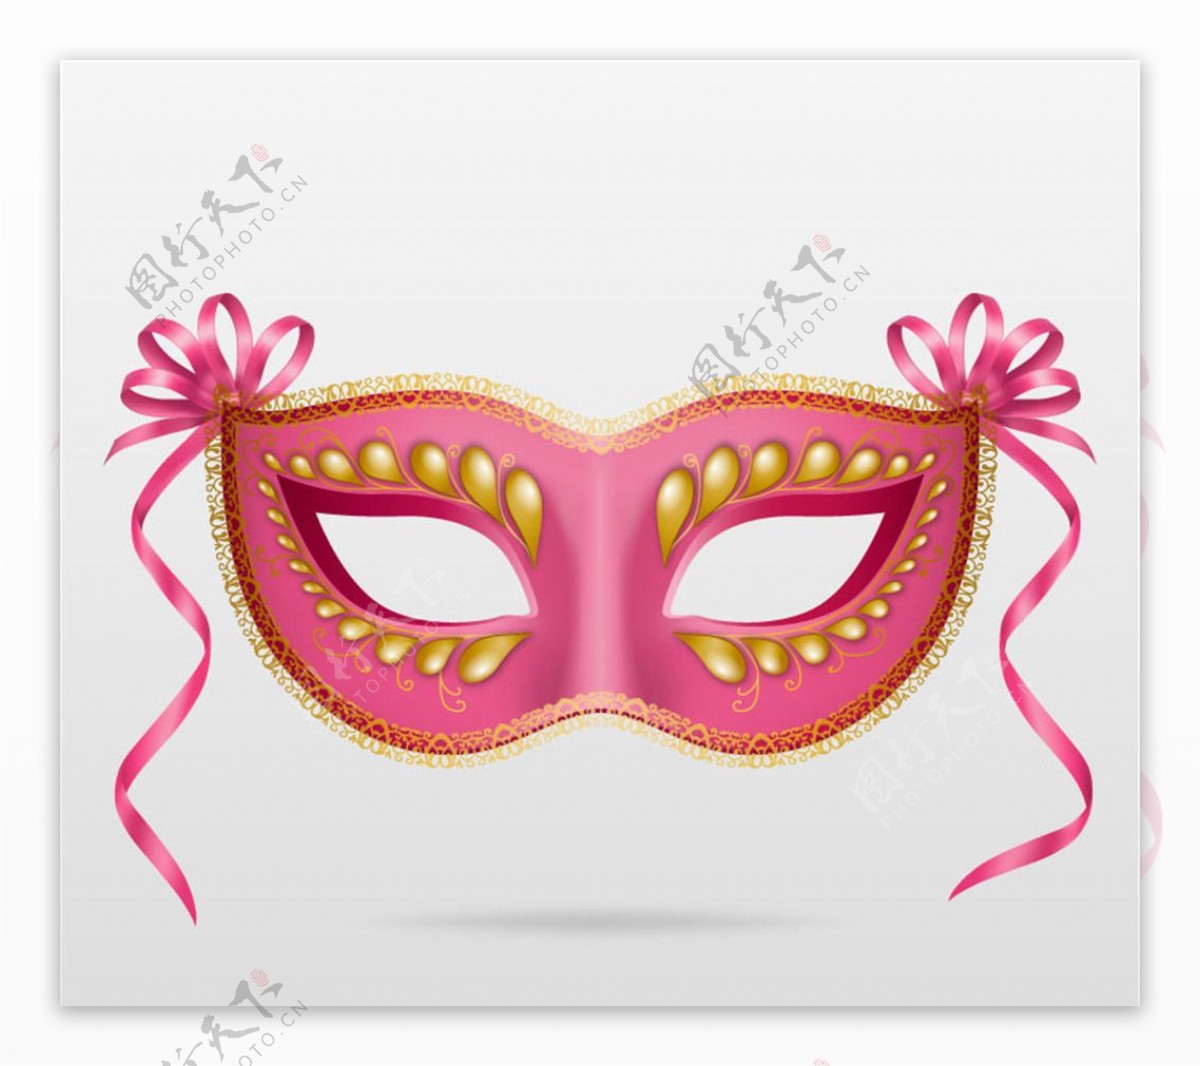 粉色面具设计矢量素材